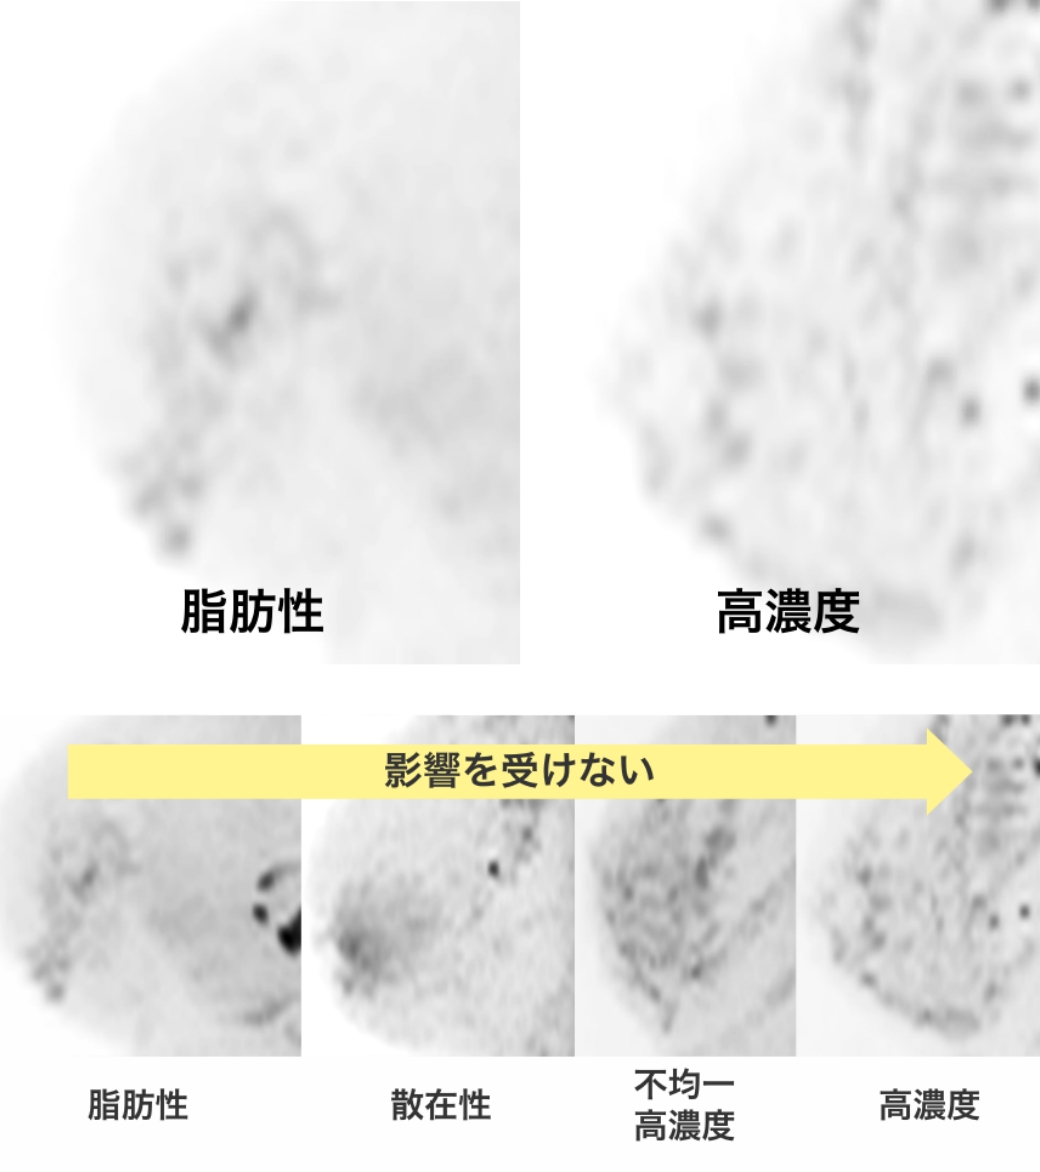 マンモグラフィ検査でのがんの見え方のイメージ